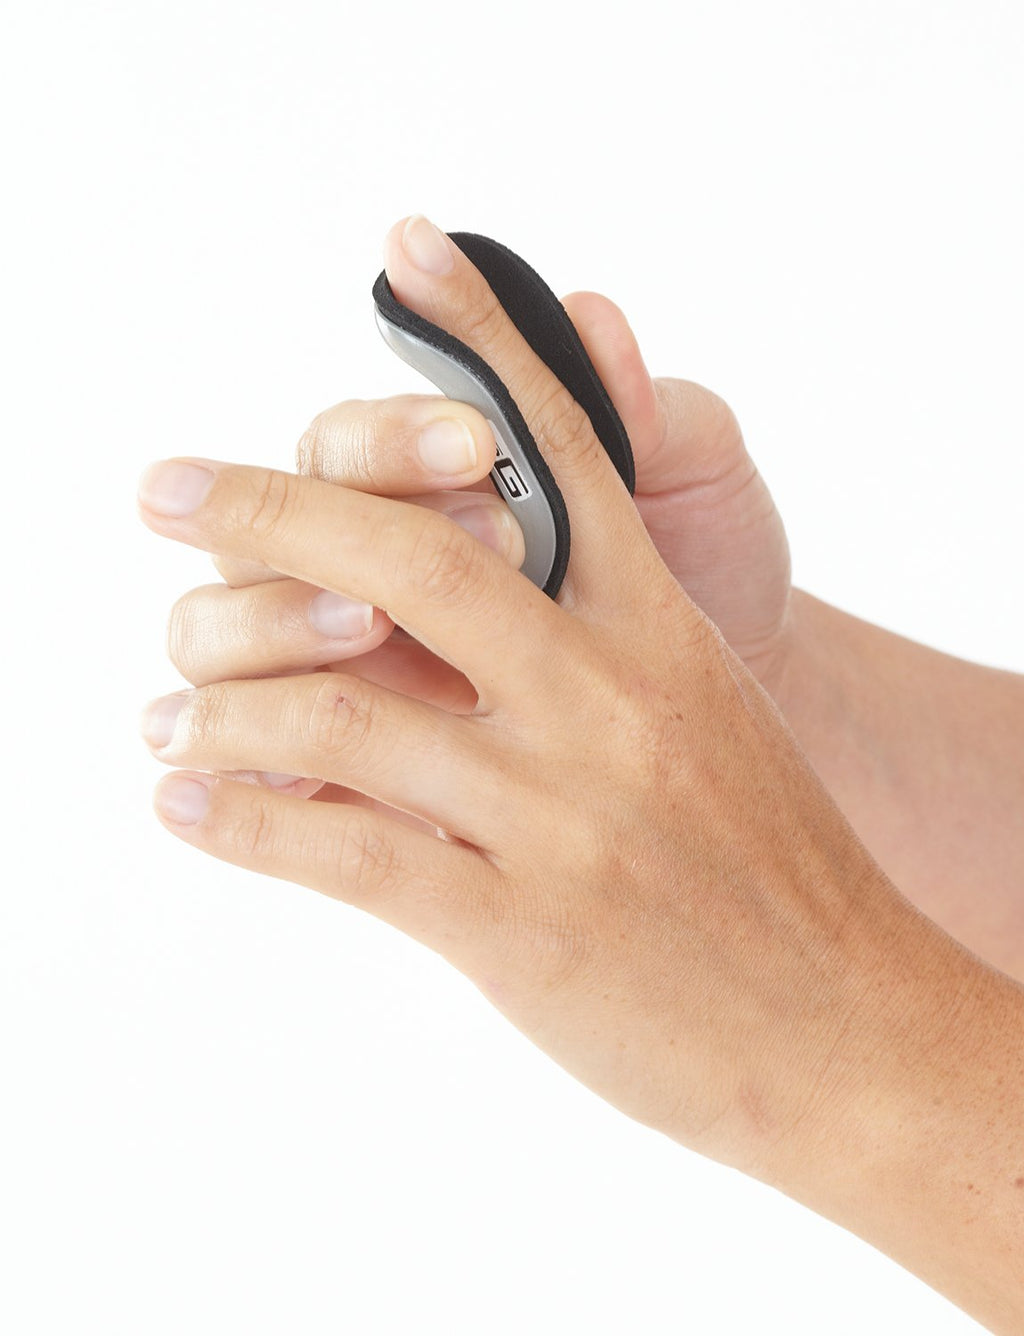 Neo G Finger Splint, Easy-Fit - Support For Trigger Finger, Mallet Finger, Baseball Finger, Strain, Sprains, Broken Fingers, Basketball - Patented Design - Class 1 Medical Device - Large - Grey Large: 6.5 CM // 2.6 IN - BeesActive Australia